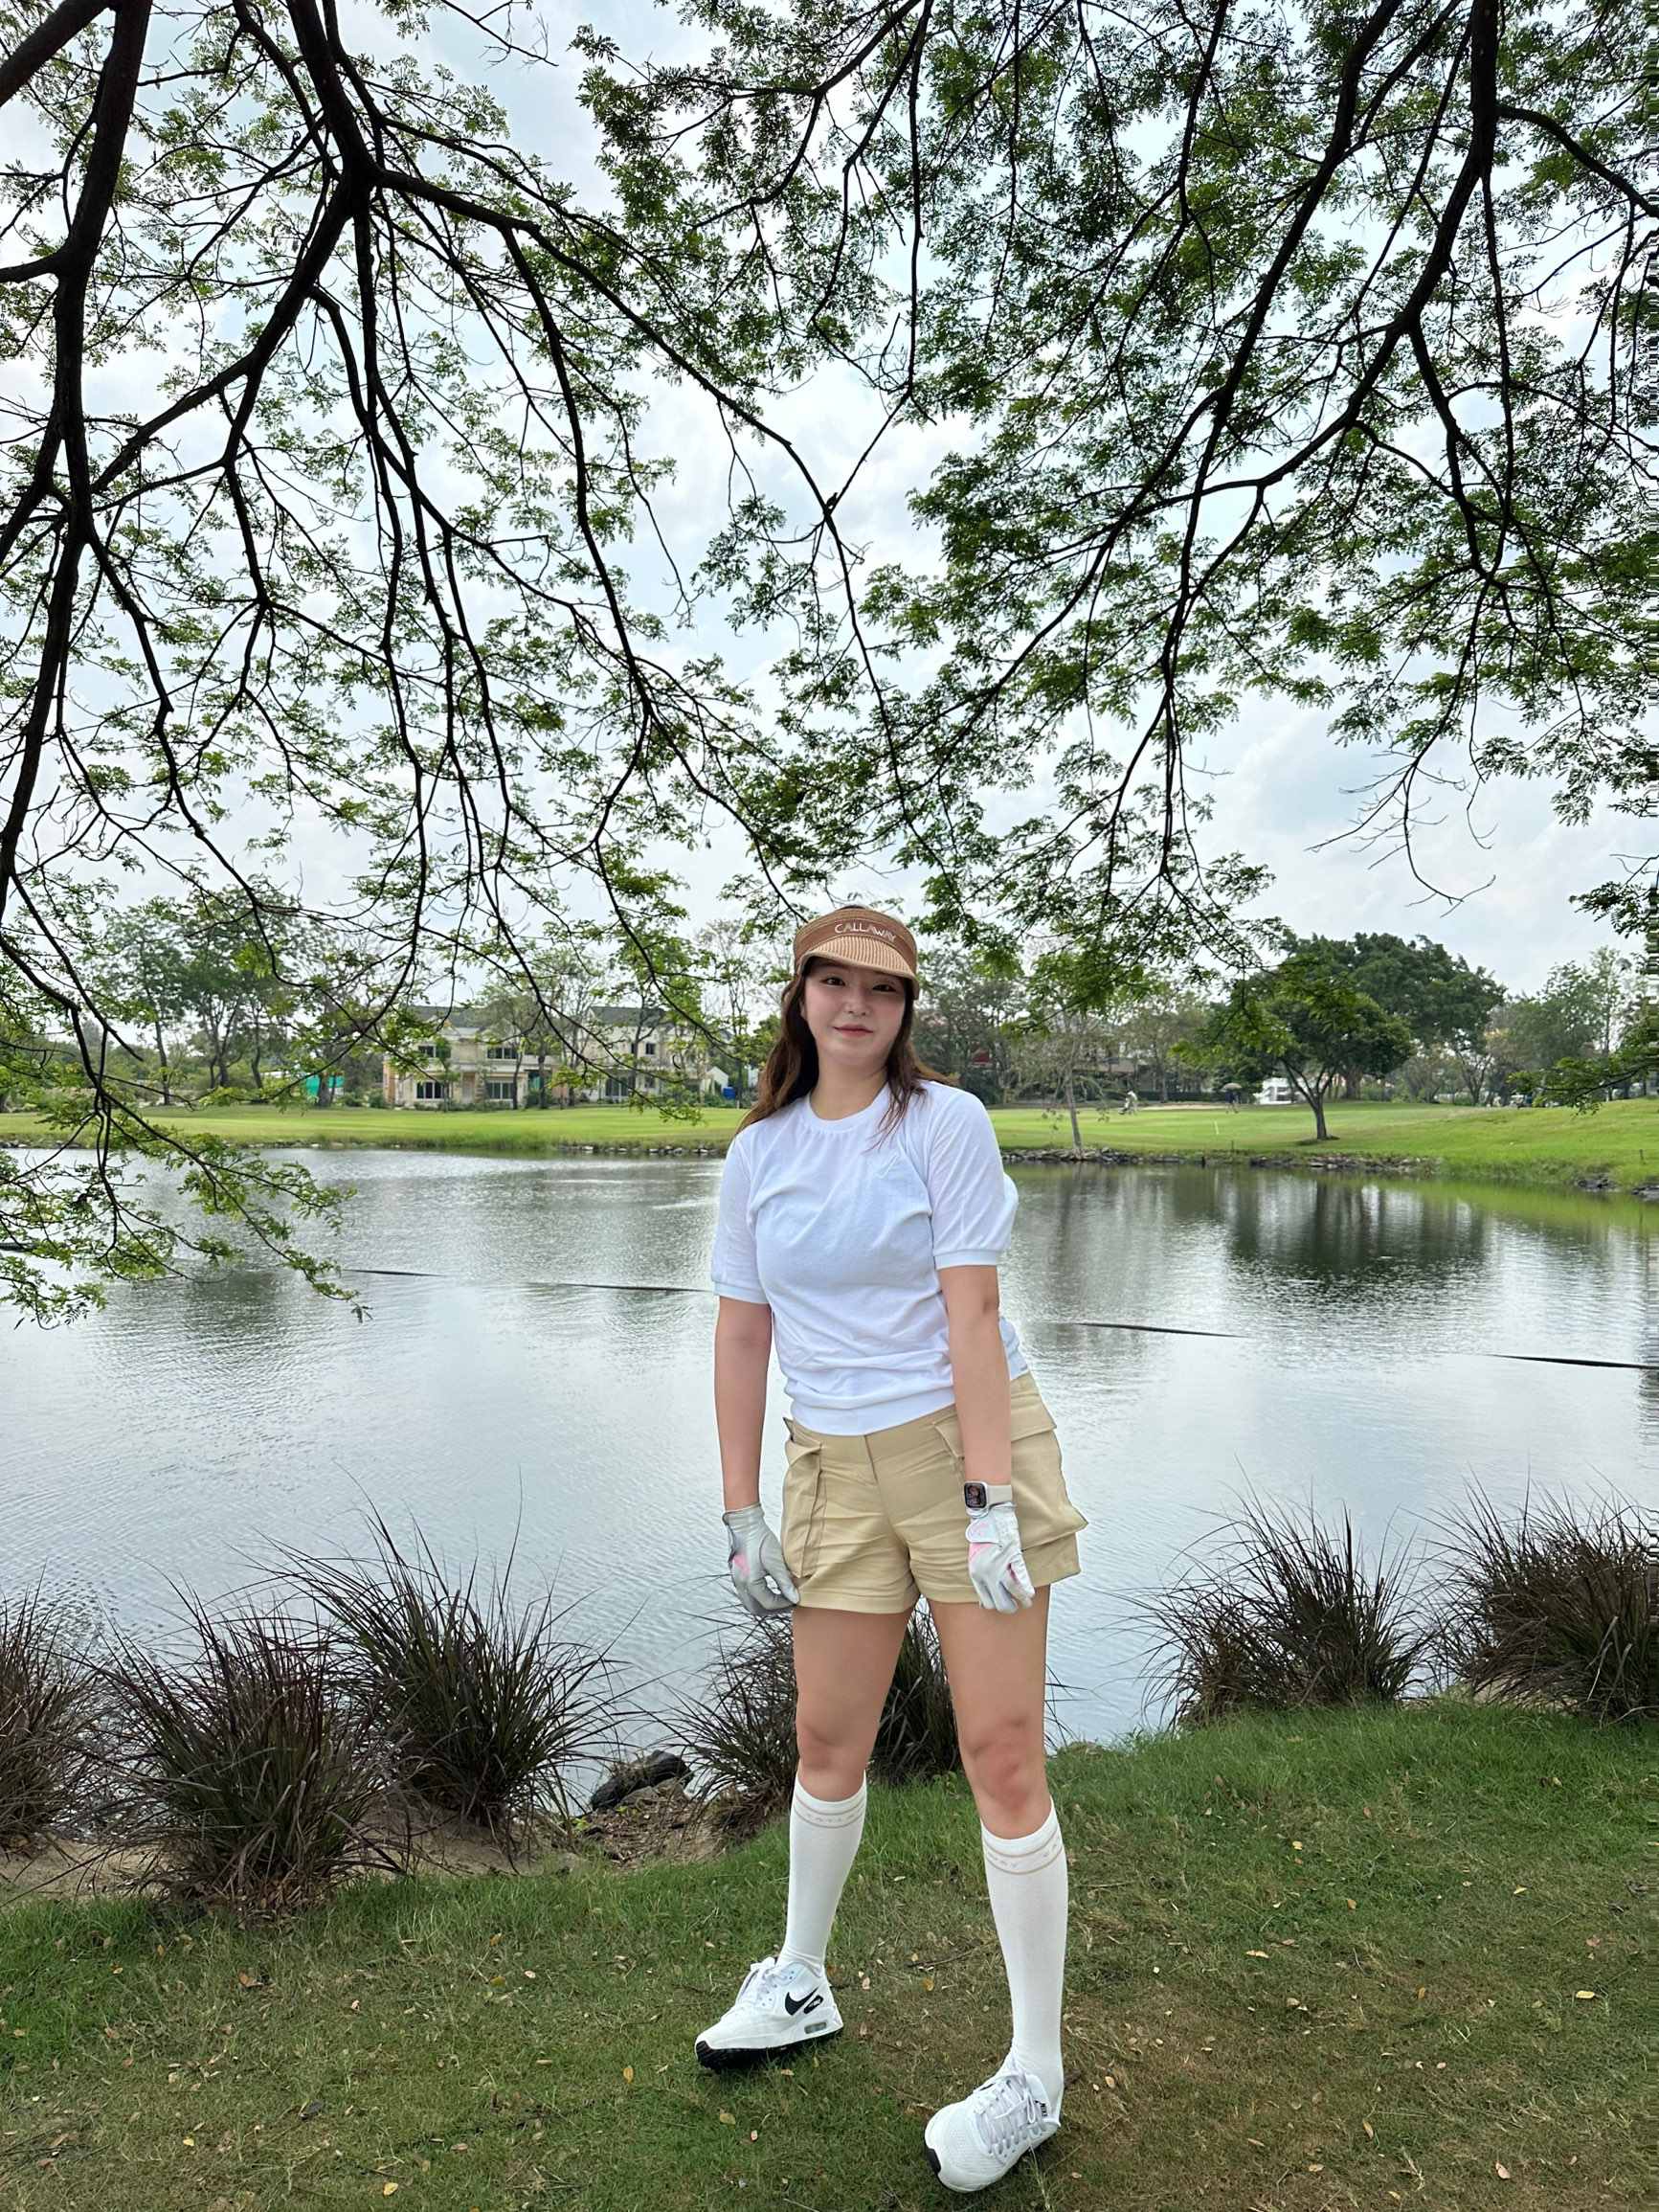 如果您去曼谷高尔夫旅行,建议在这里预订👍🏻皇家高尔夫球场